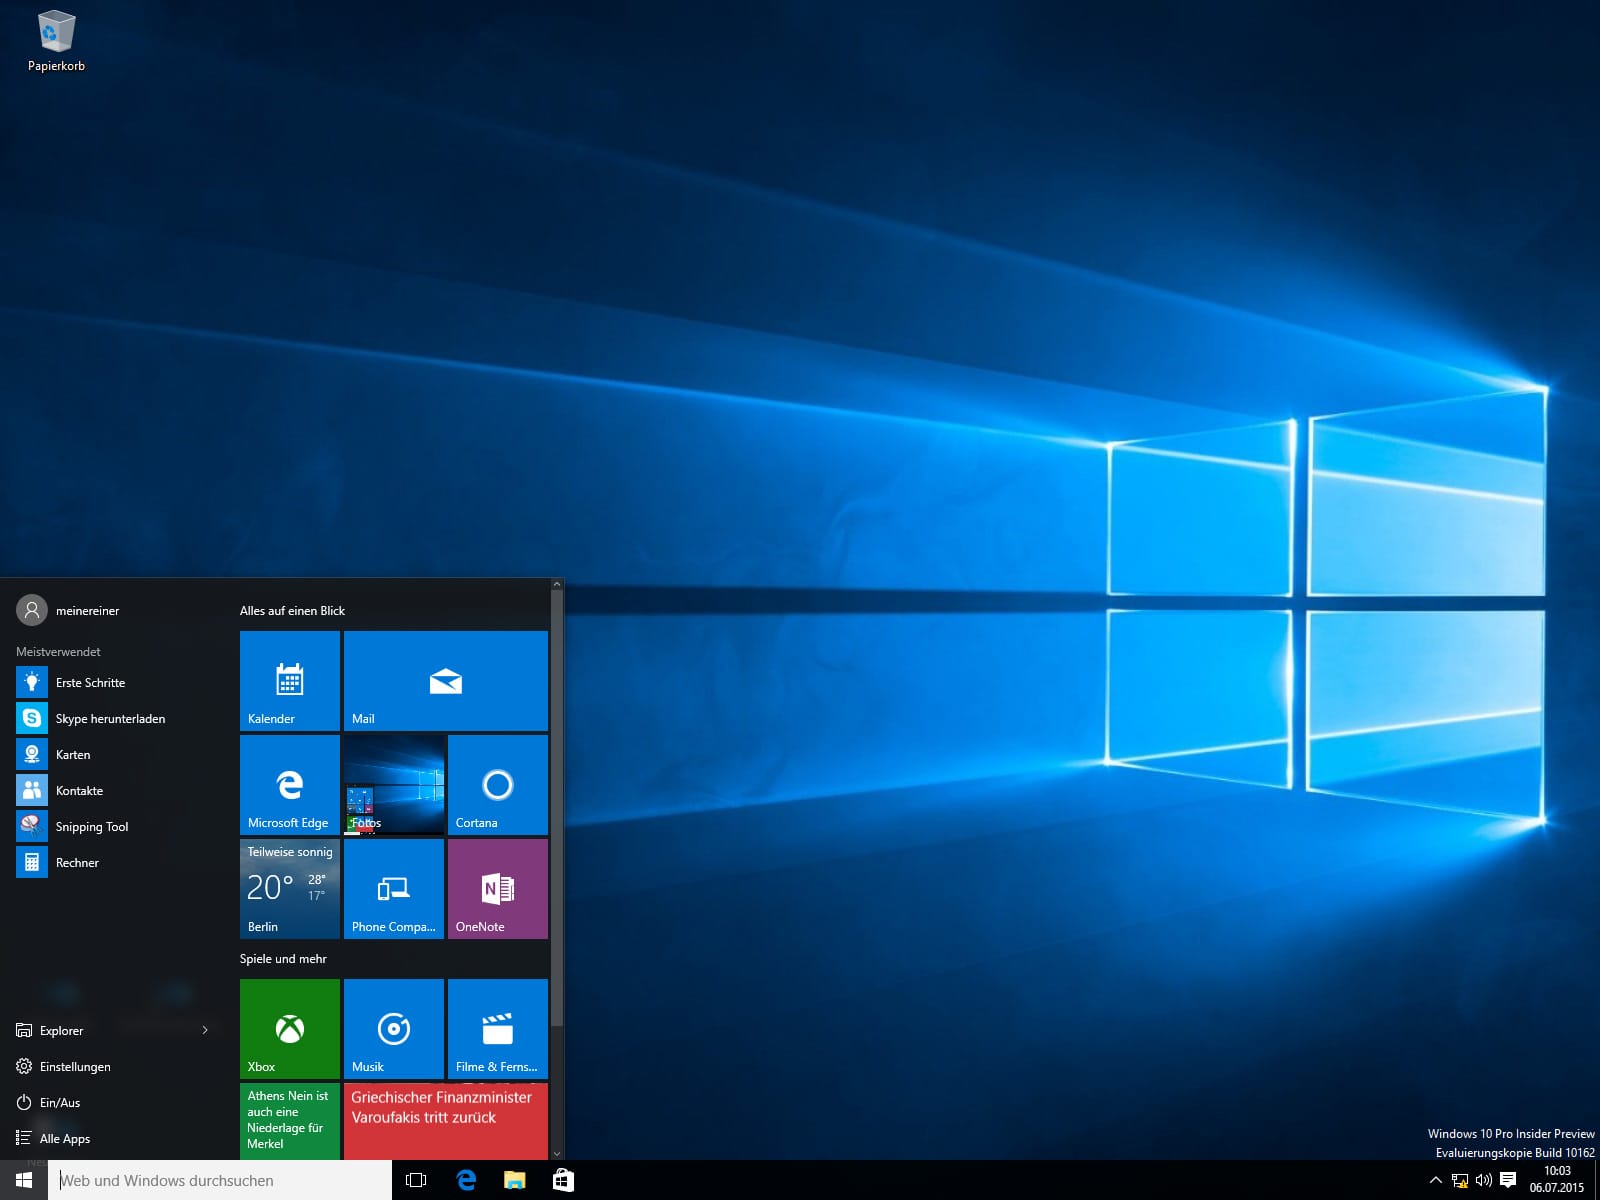 Windows 10 hat wieder ein Startmenü. Das neueste Microsoft-Betriebssystem erkennt automatisch, ob es auf einem Desktop-PC oder einem Tablet installiert ist und startet entsprechend die Oberfläche als Desktop oder in Kachel-Optik.